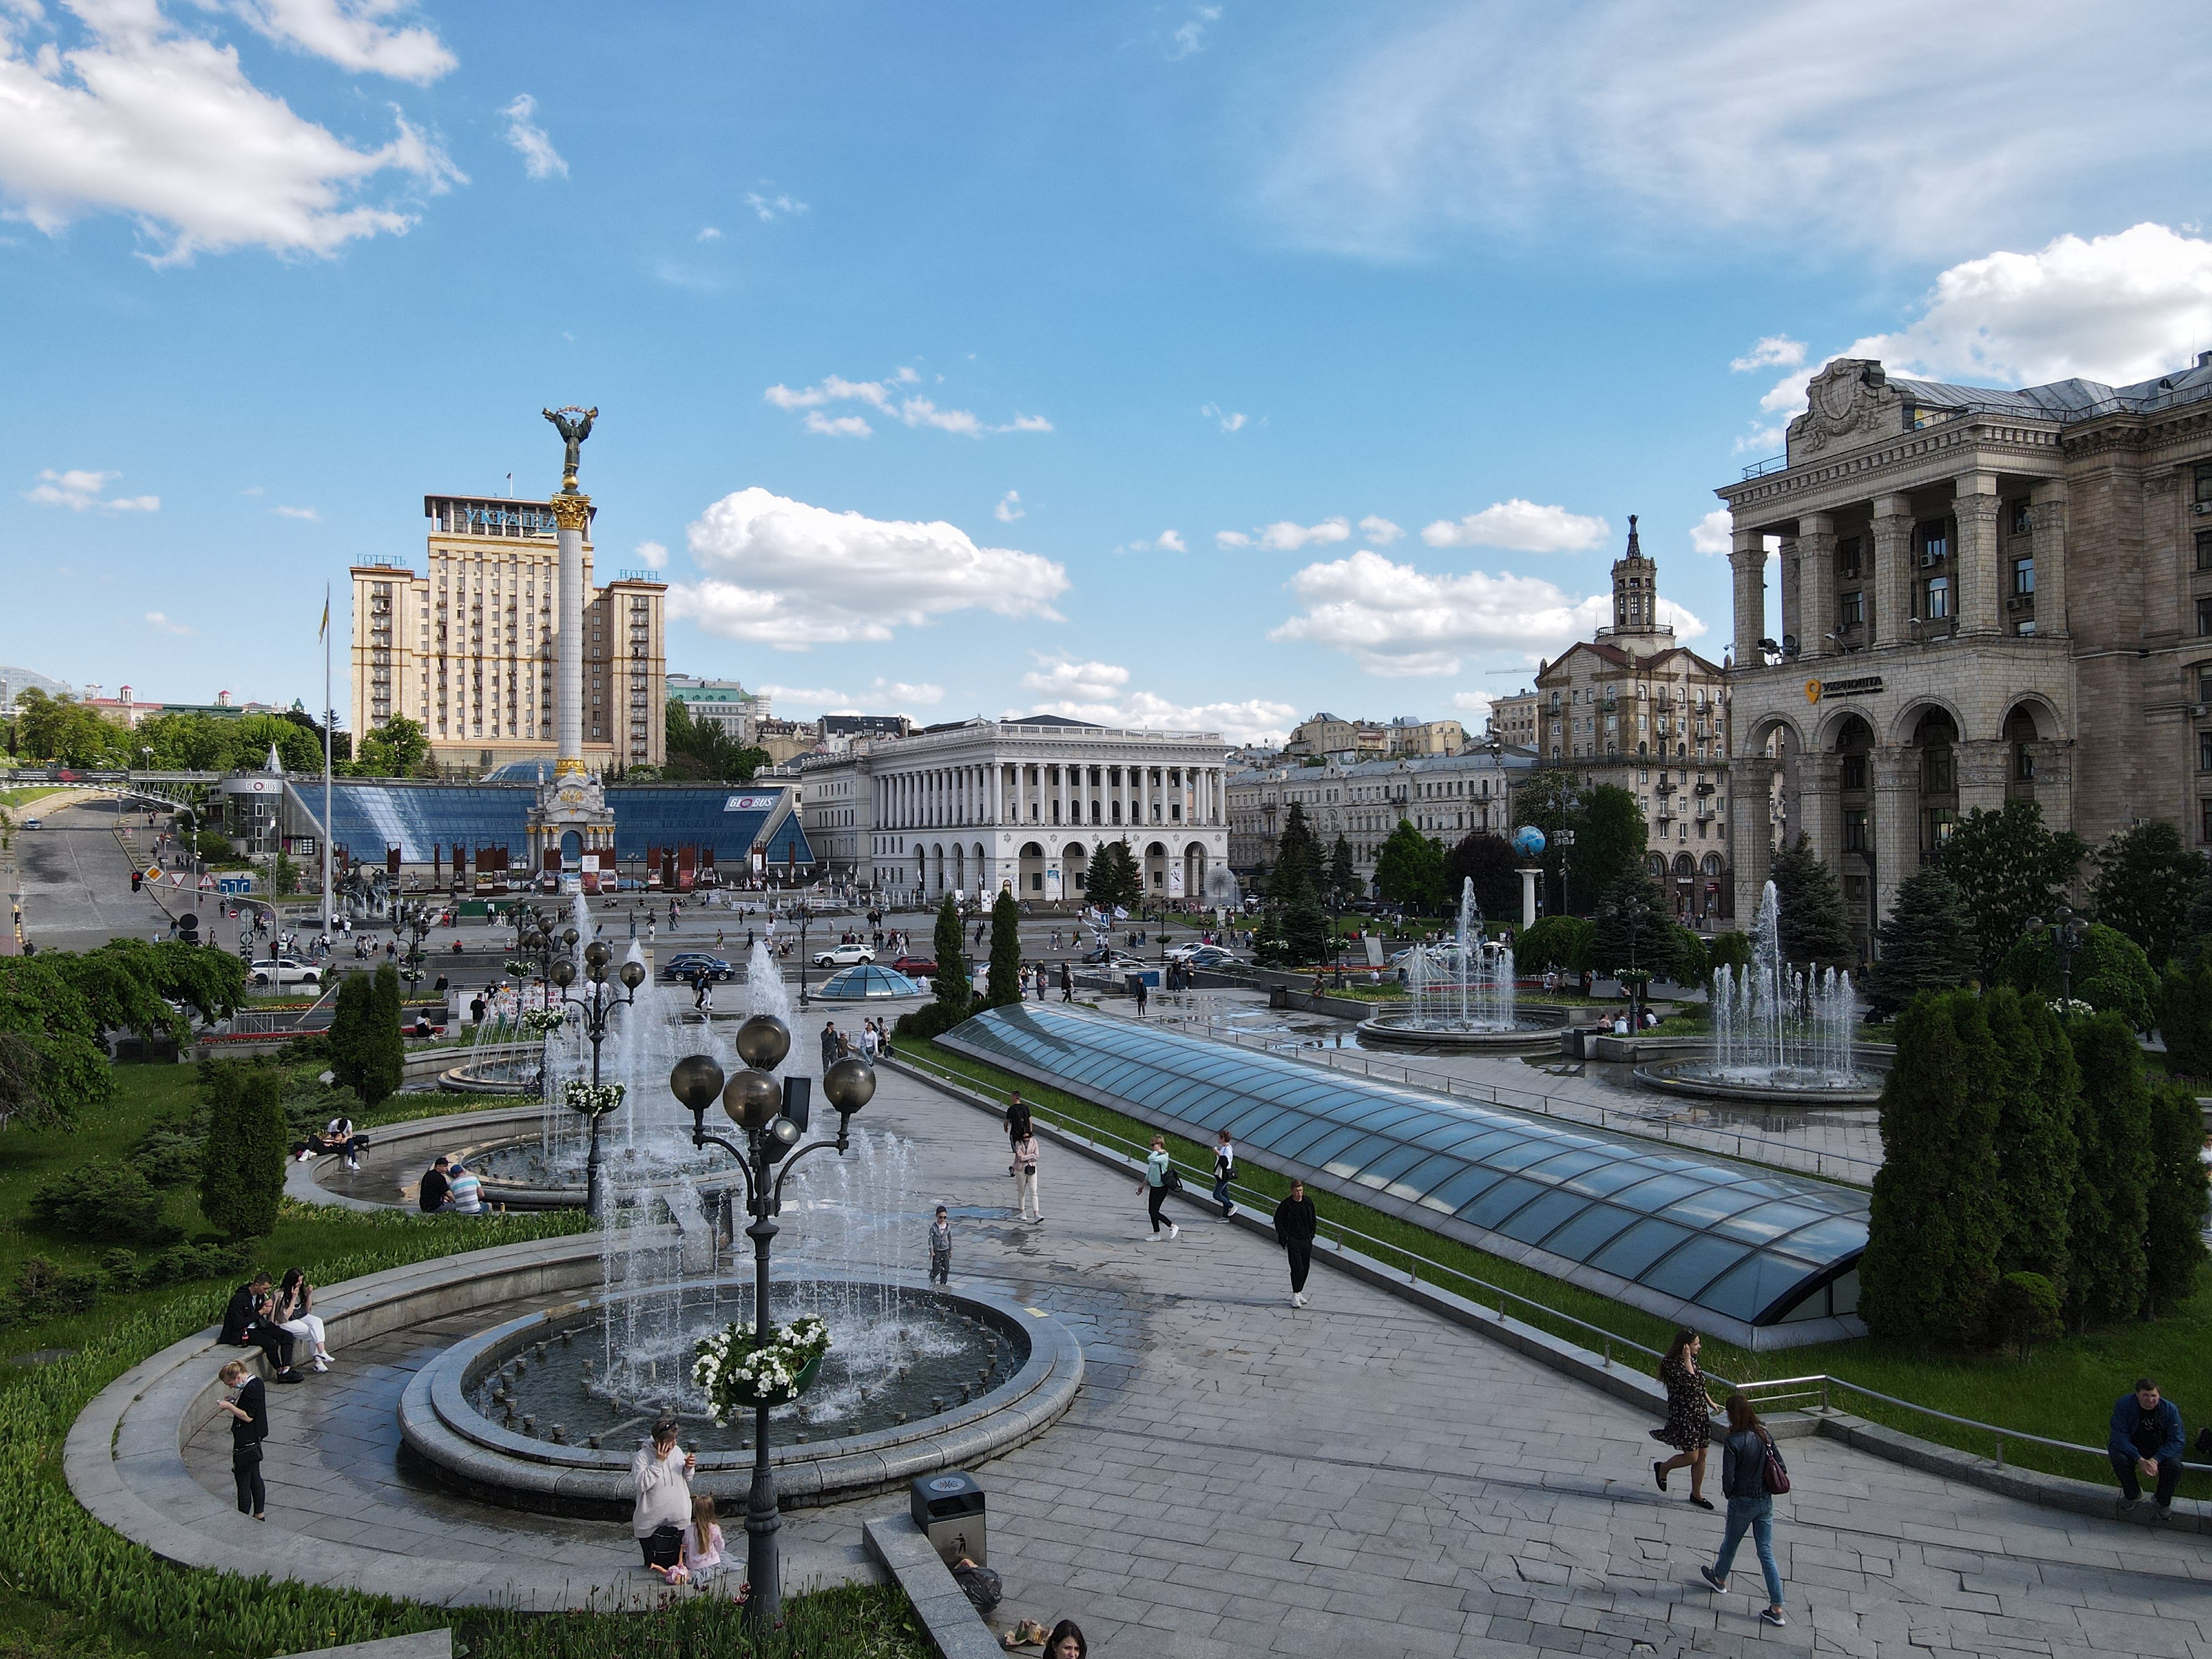 Киевсовет решил реорганизовать КП “Киевский городской туристско-информационный центр”